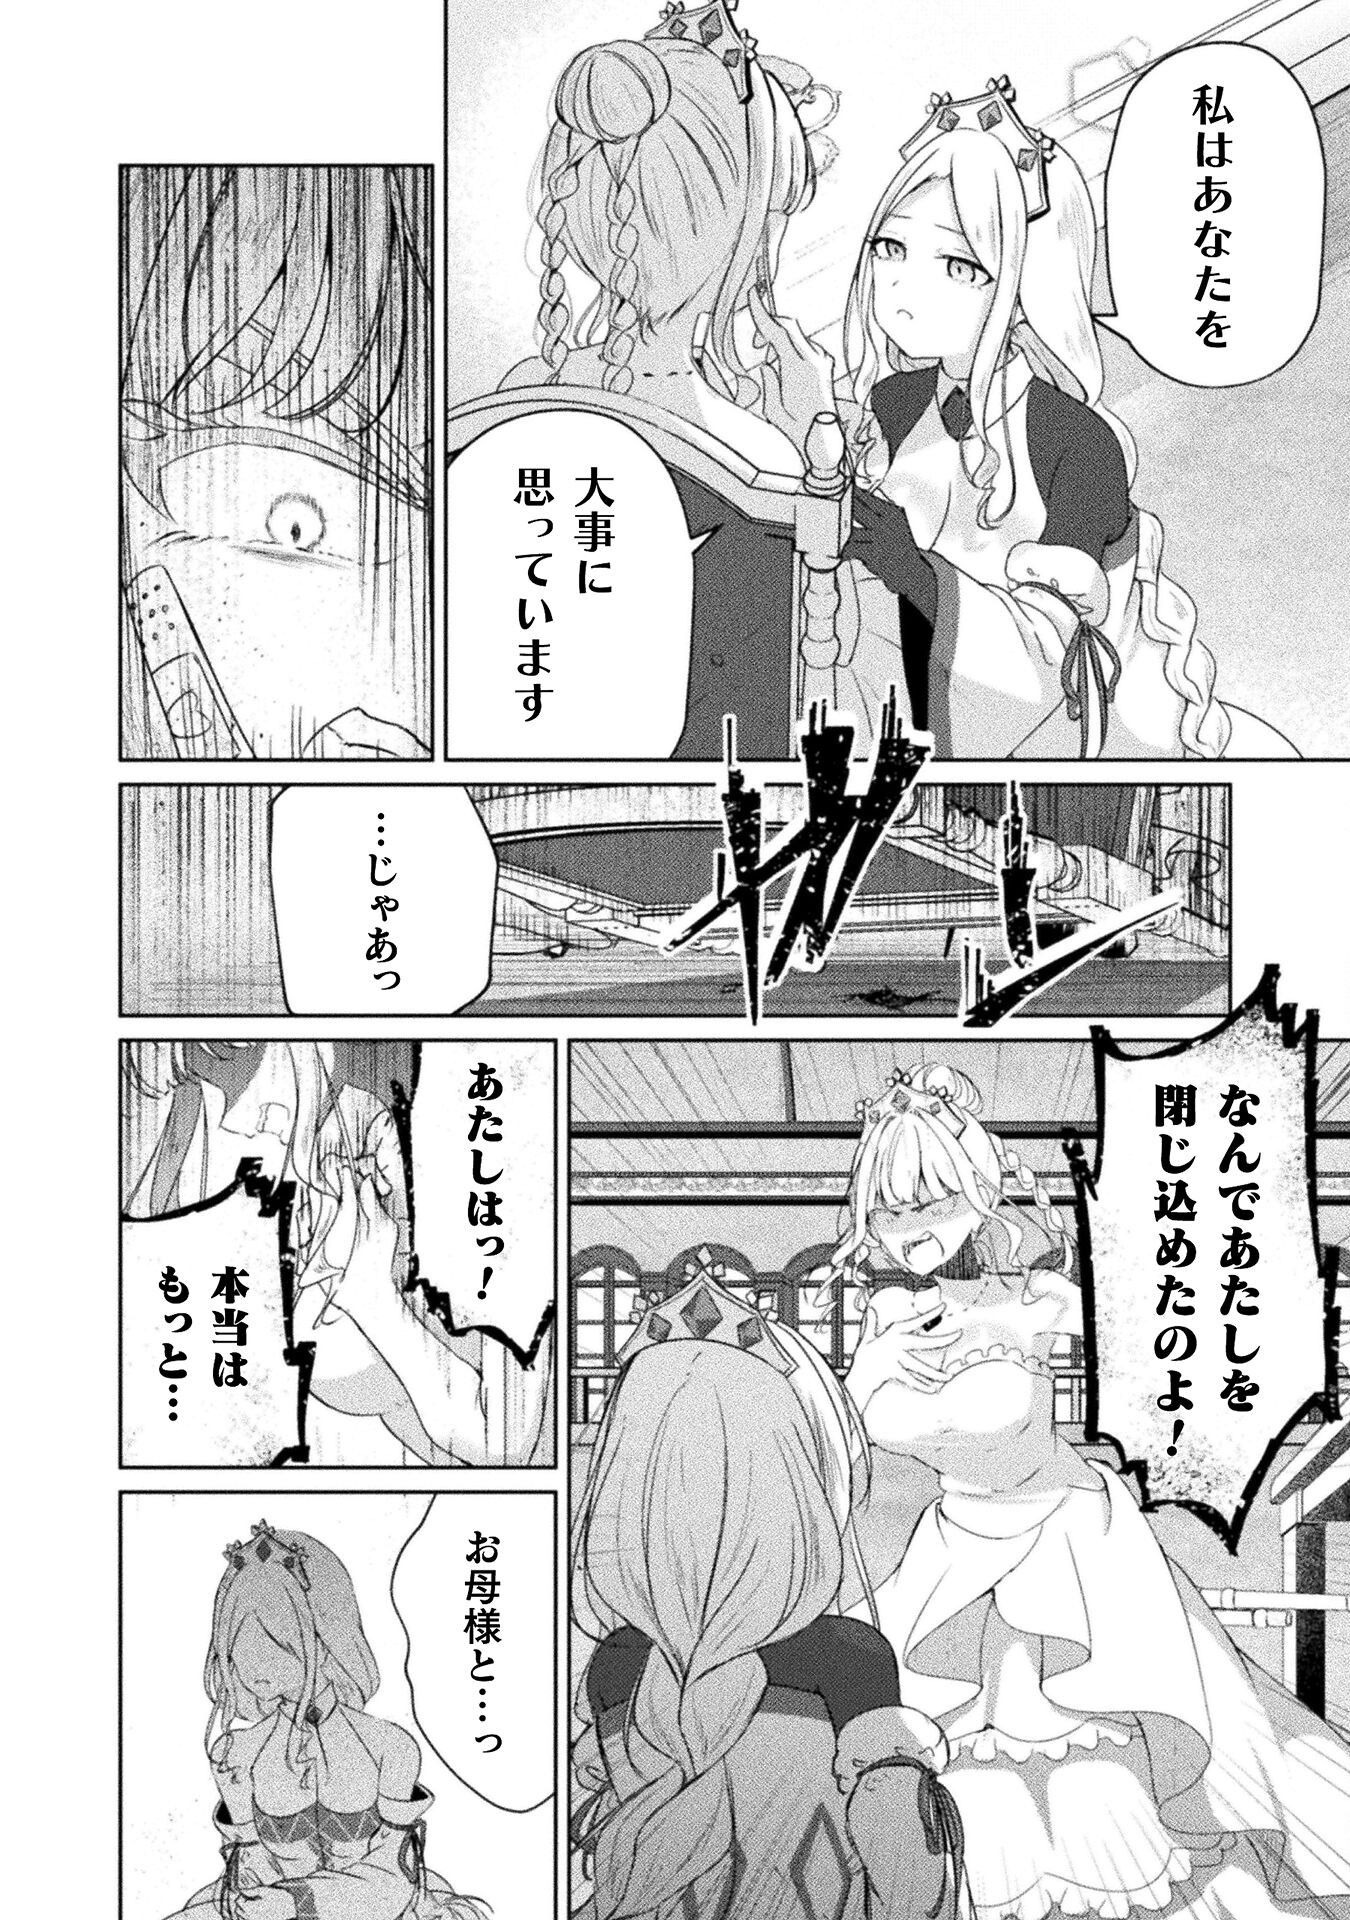 Maou Jou Date Daisakusen! - Chapter 16 - Page 2